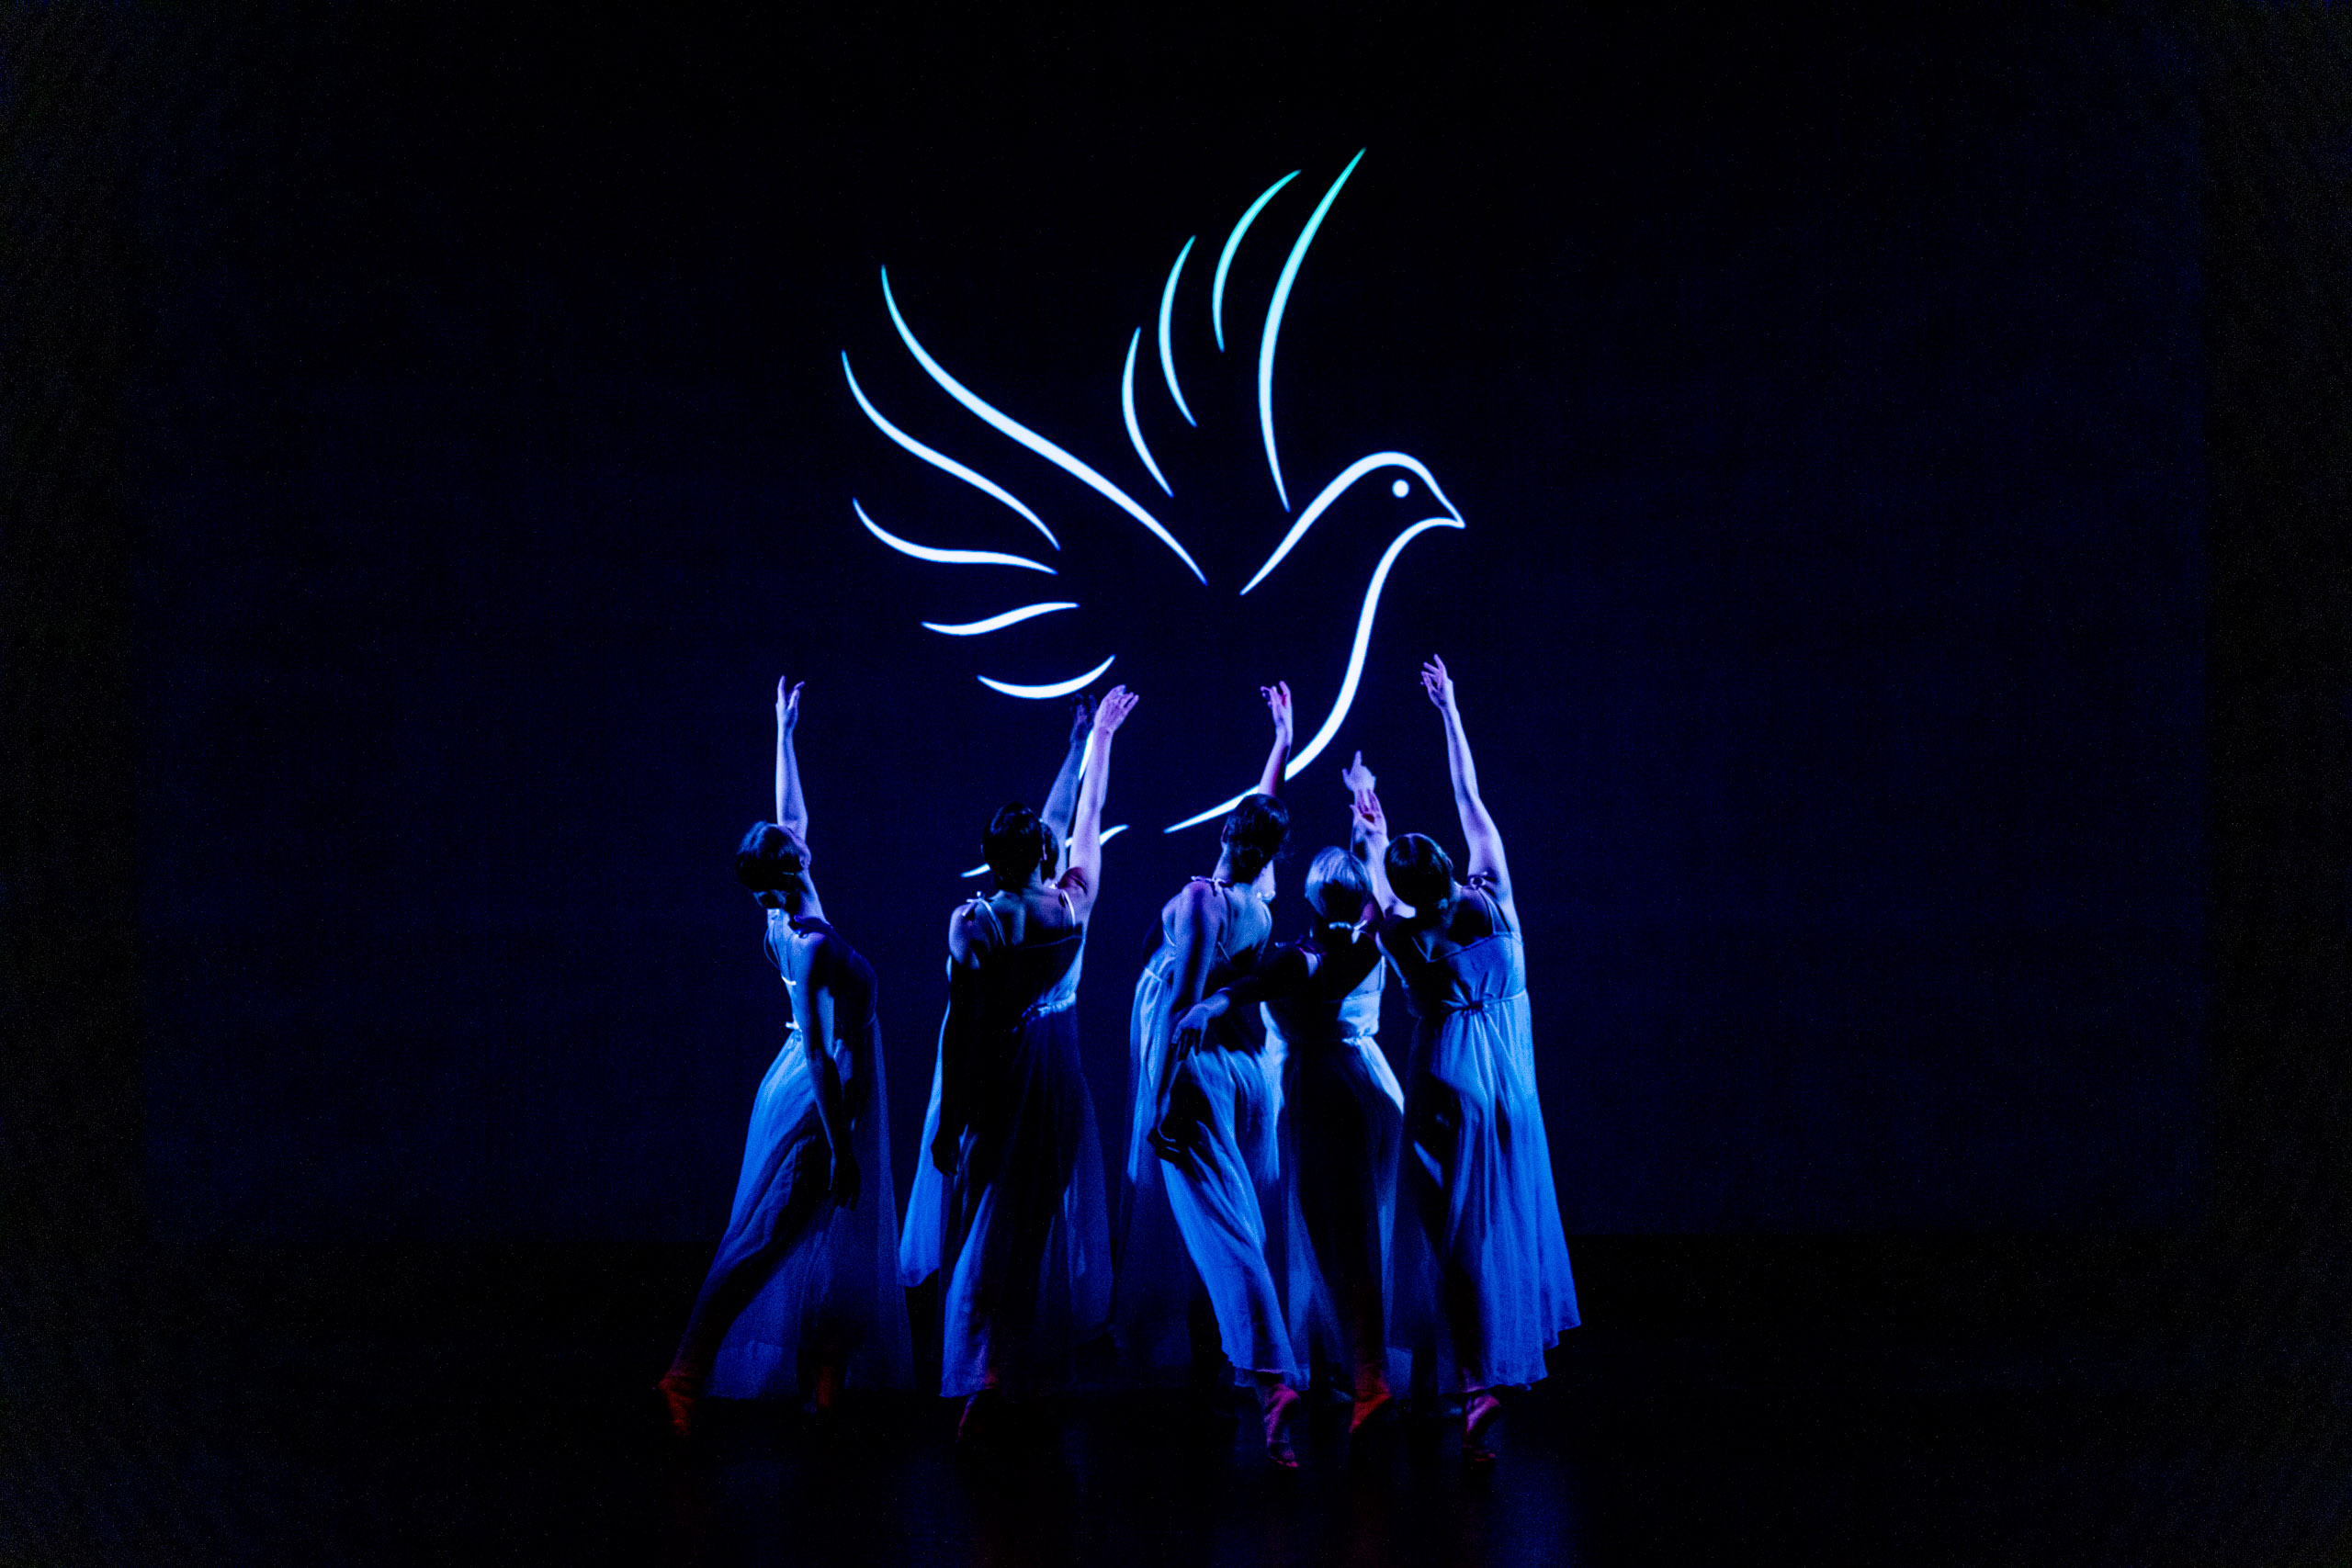 sechs Tänzerinnen strecken ihren Arm in Richtung einer im Hintergrund projizierten Taube